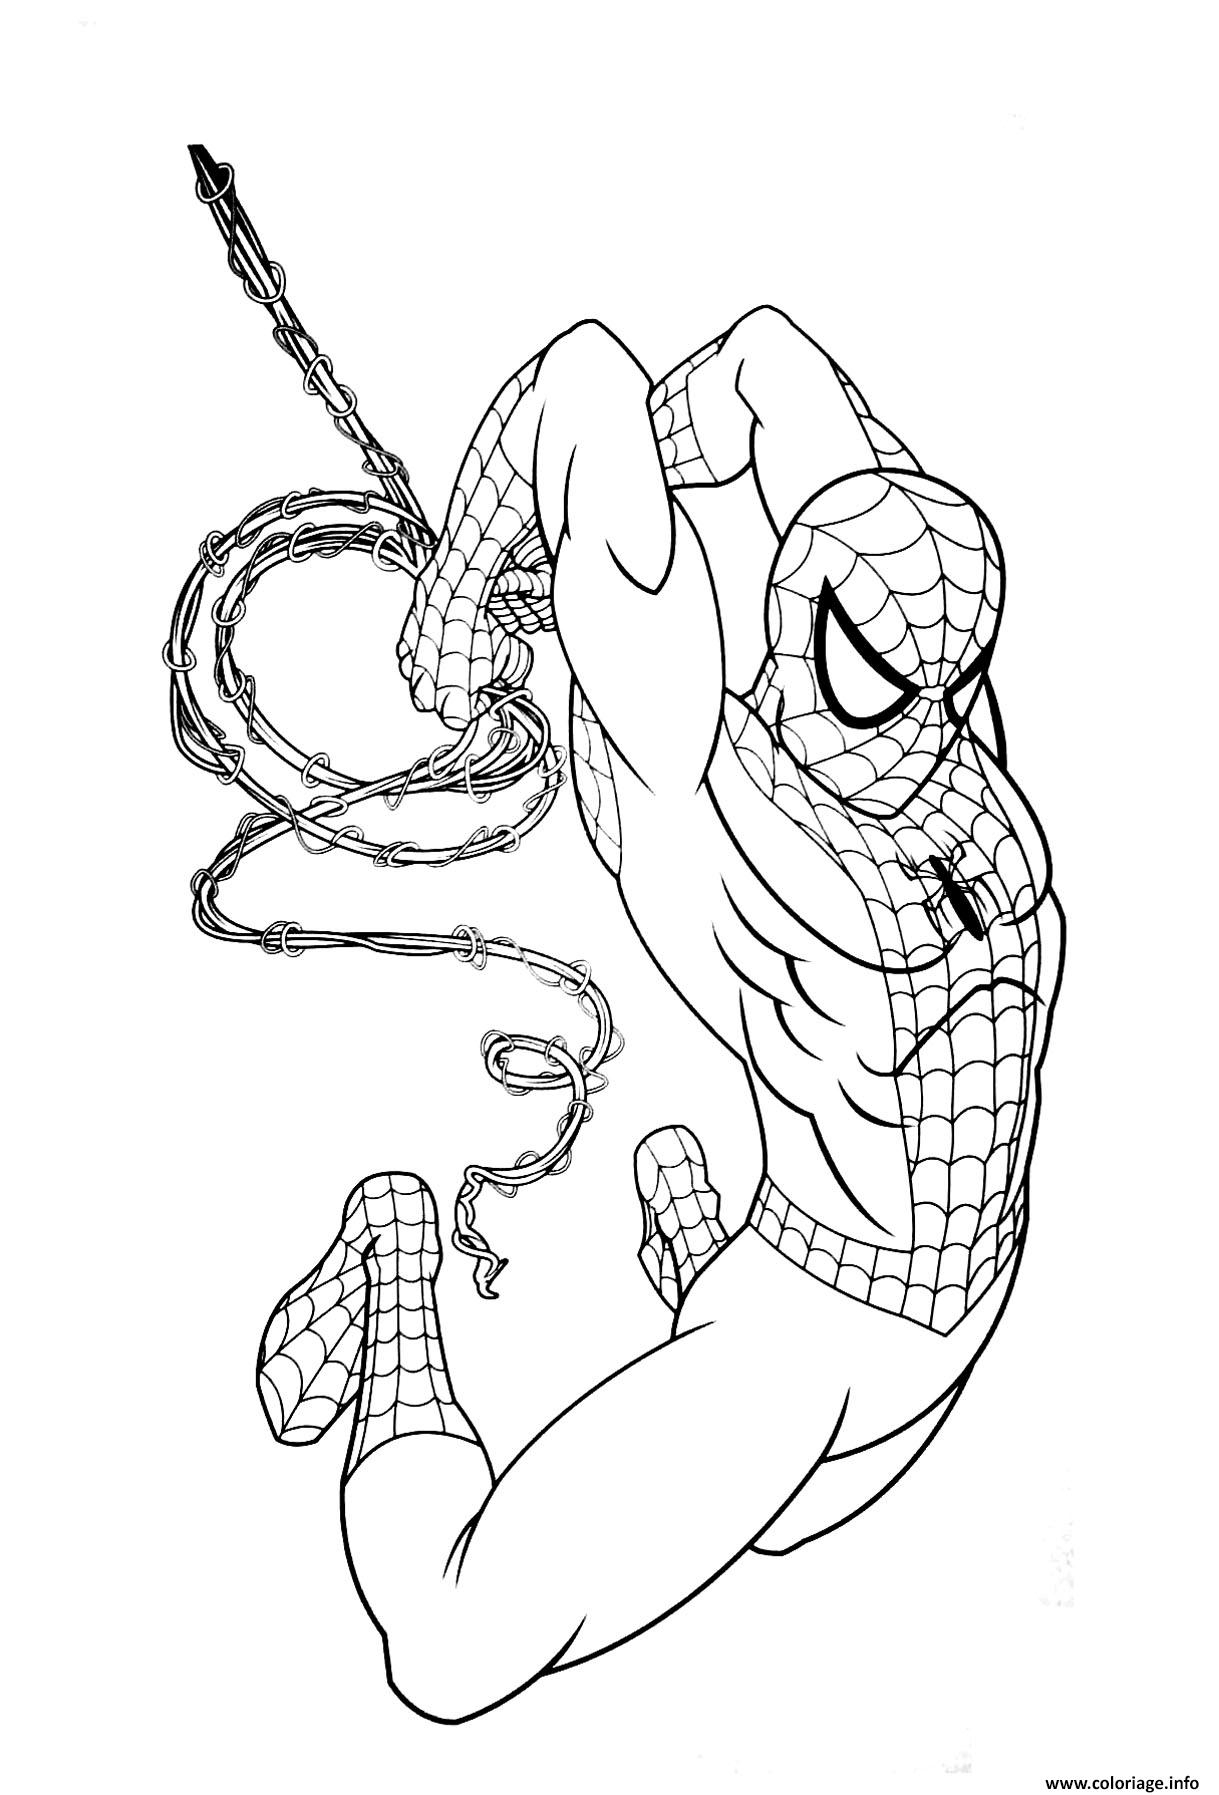 Coloriage Garcon Super Heros Marvel Spiderman Dessin Garcon À Imprimer pour Dessin A Imprimer Pour Garçon 